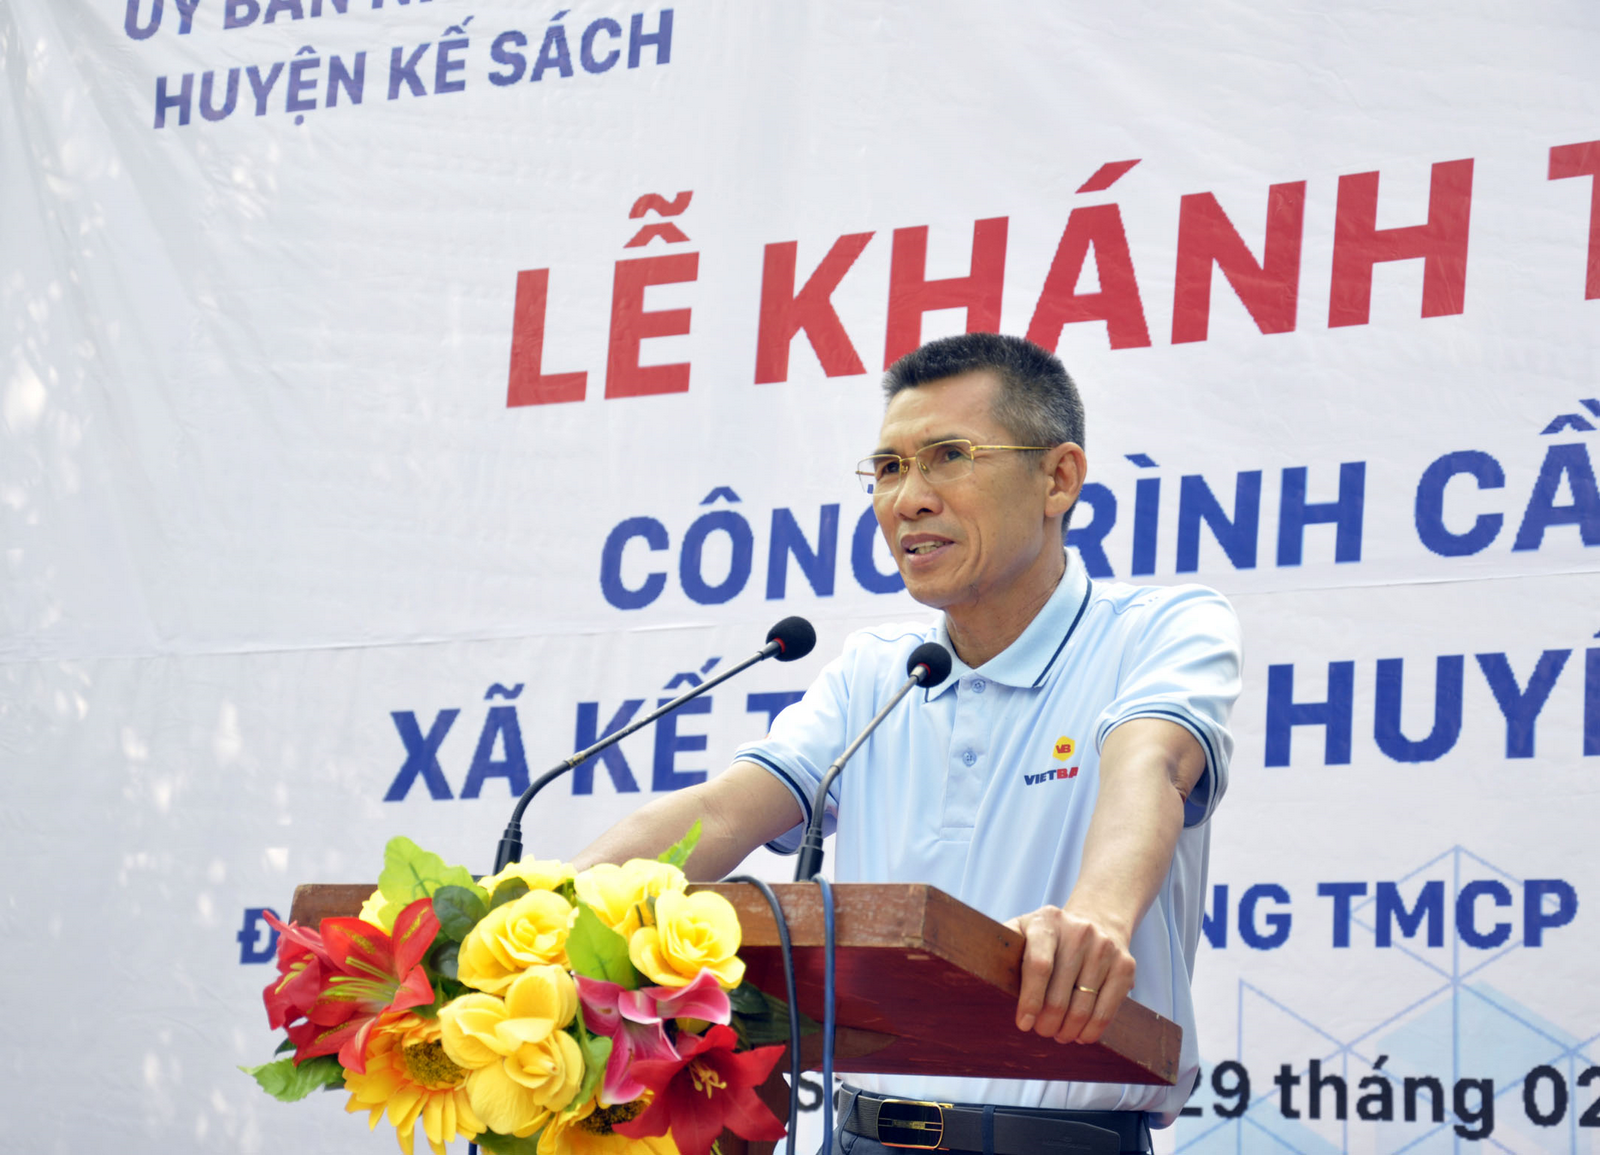 Vietbank khánh thành cầu giao thông nông thôn tại xã Kế Thành, tỉnh Sóc Trăng